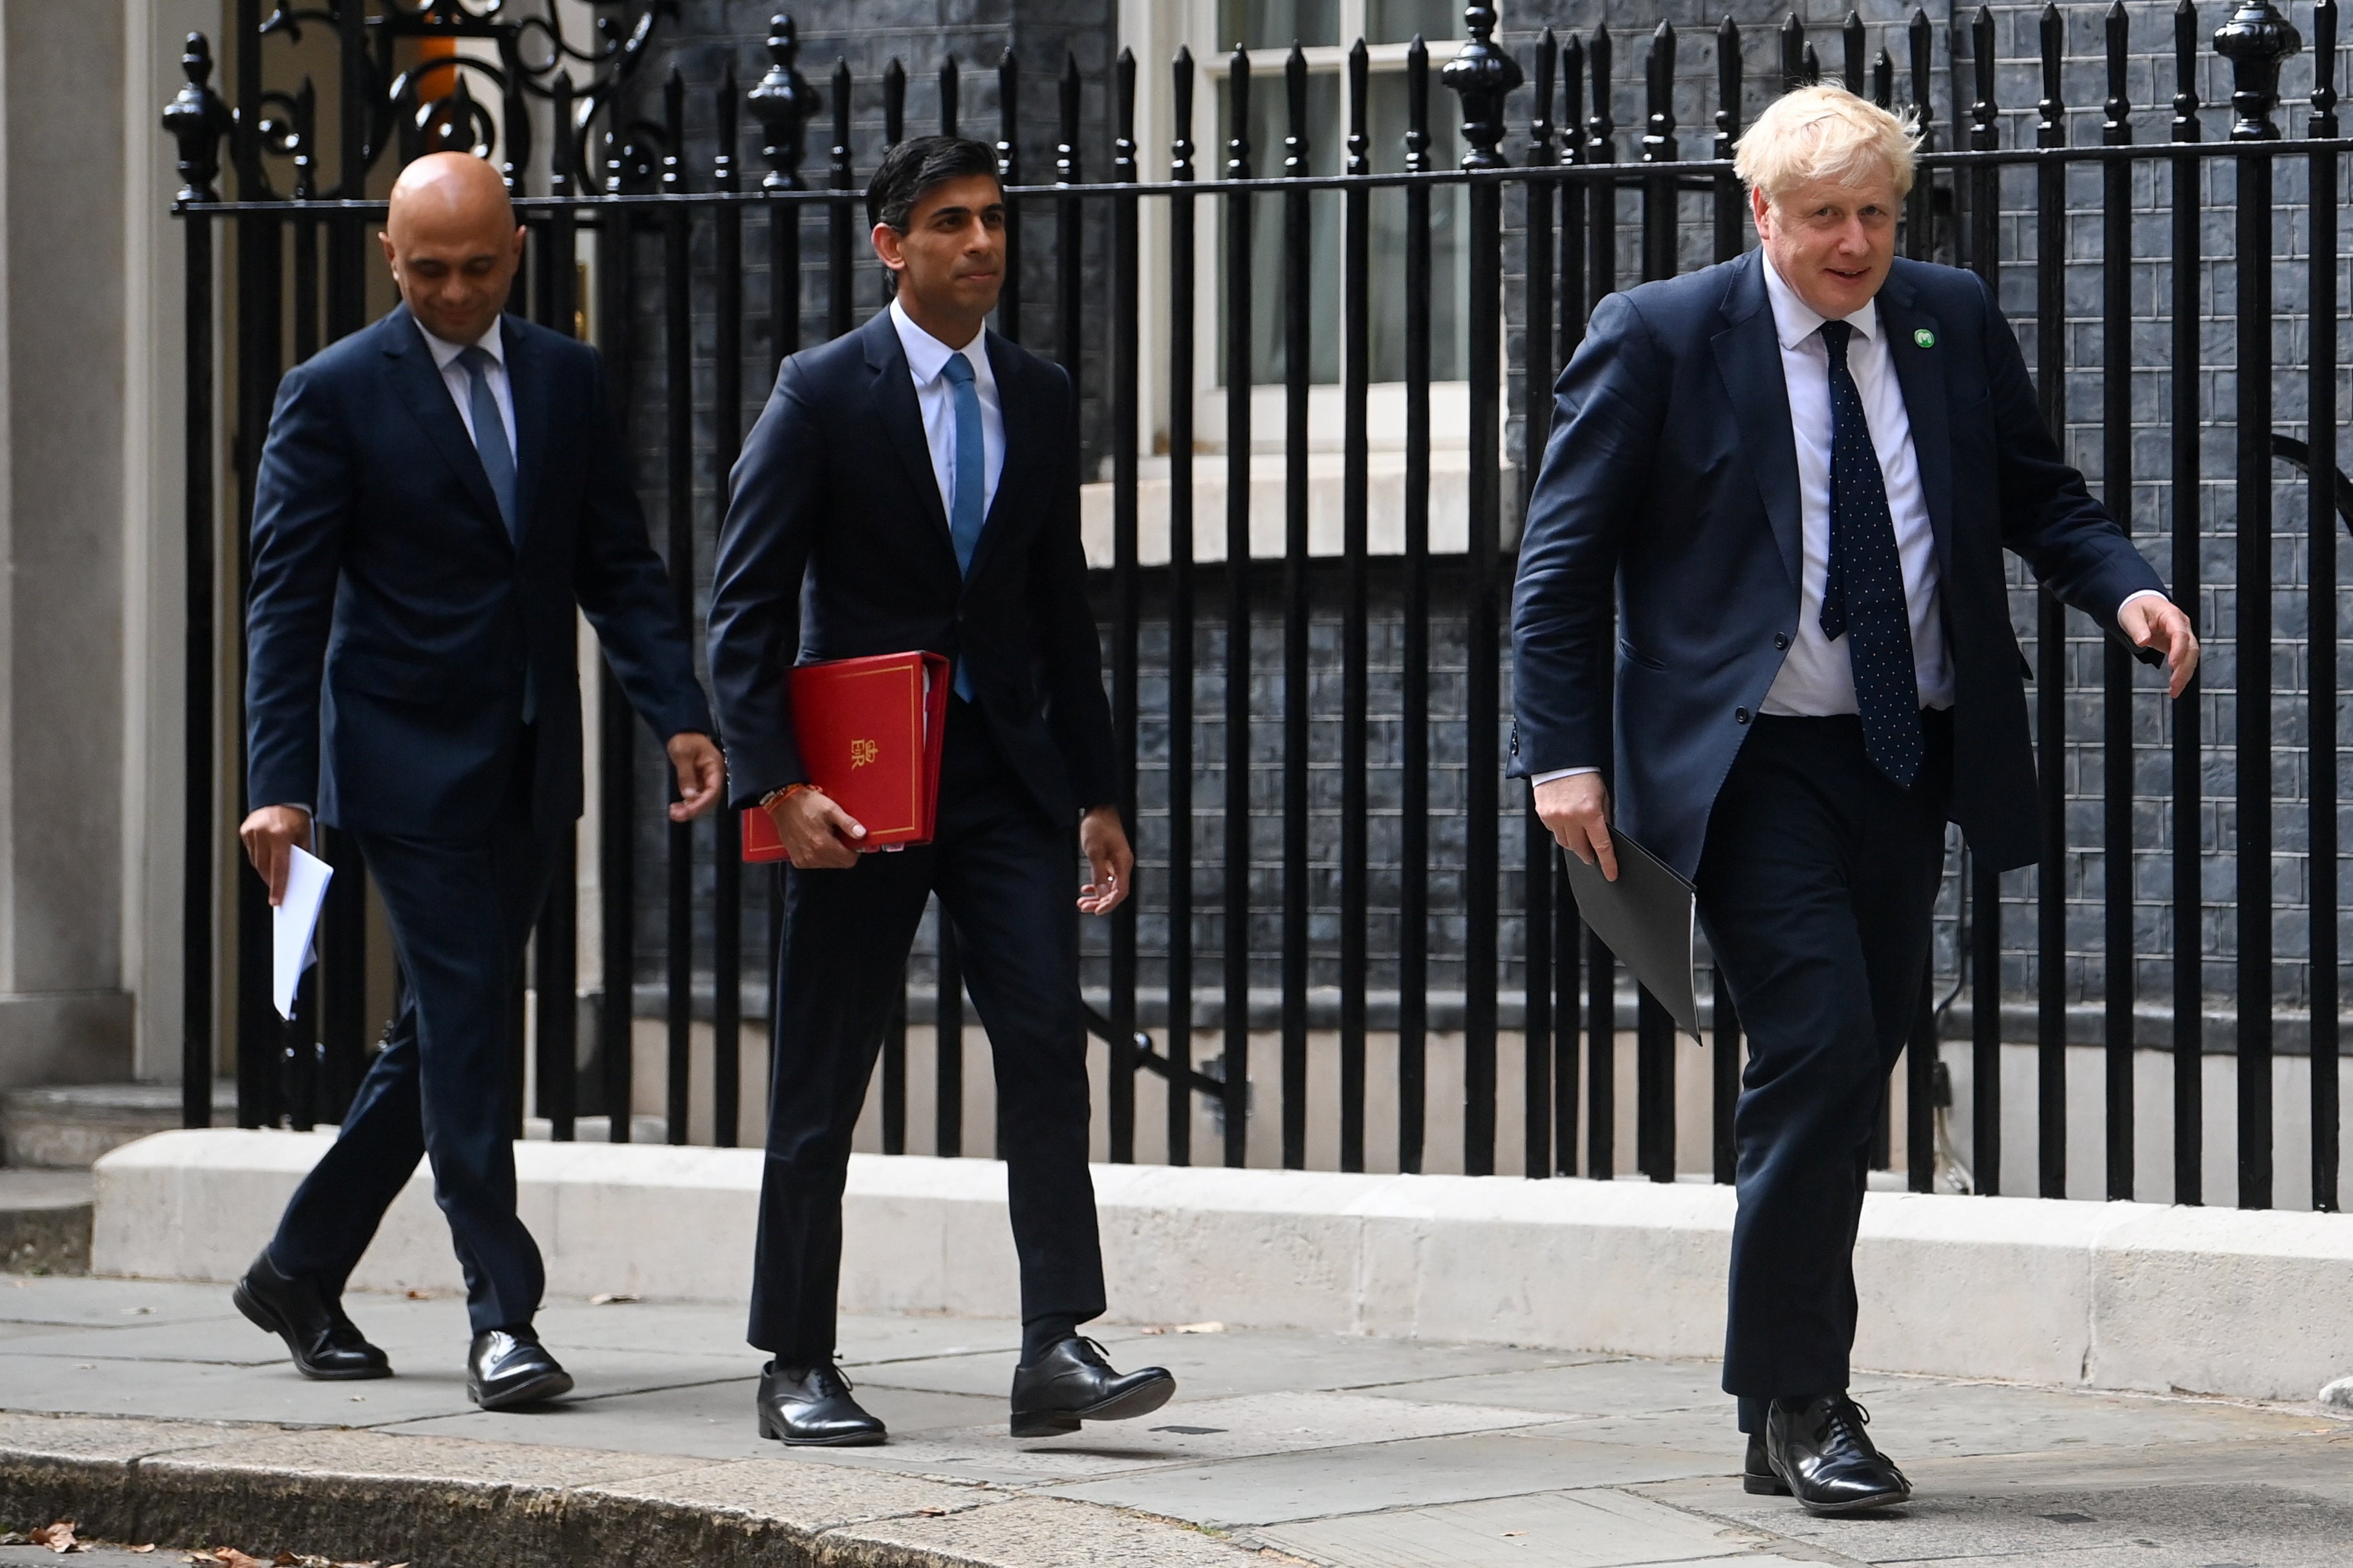 Премьер министром великобритании становится. Министр финансов Великобритании Саджид Джавид. Риши Сунак премьер министр Британии. Премьер министр Великобритании сейчас Риши Сунак.